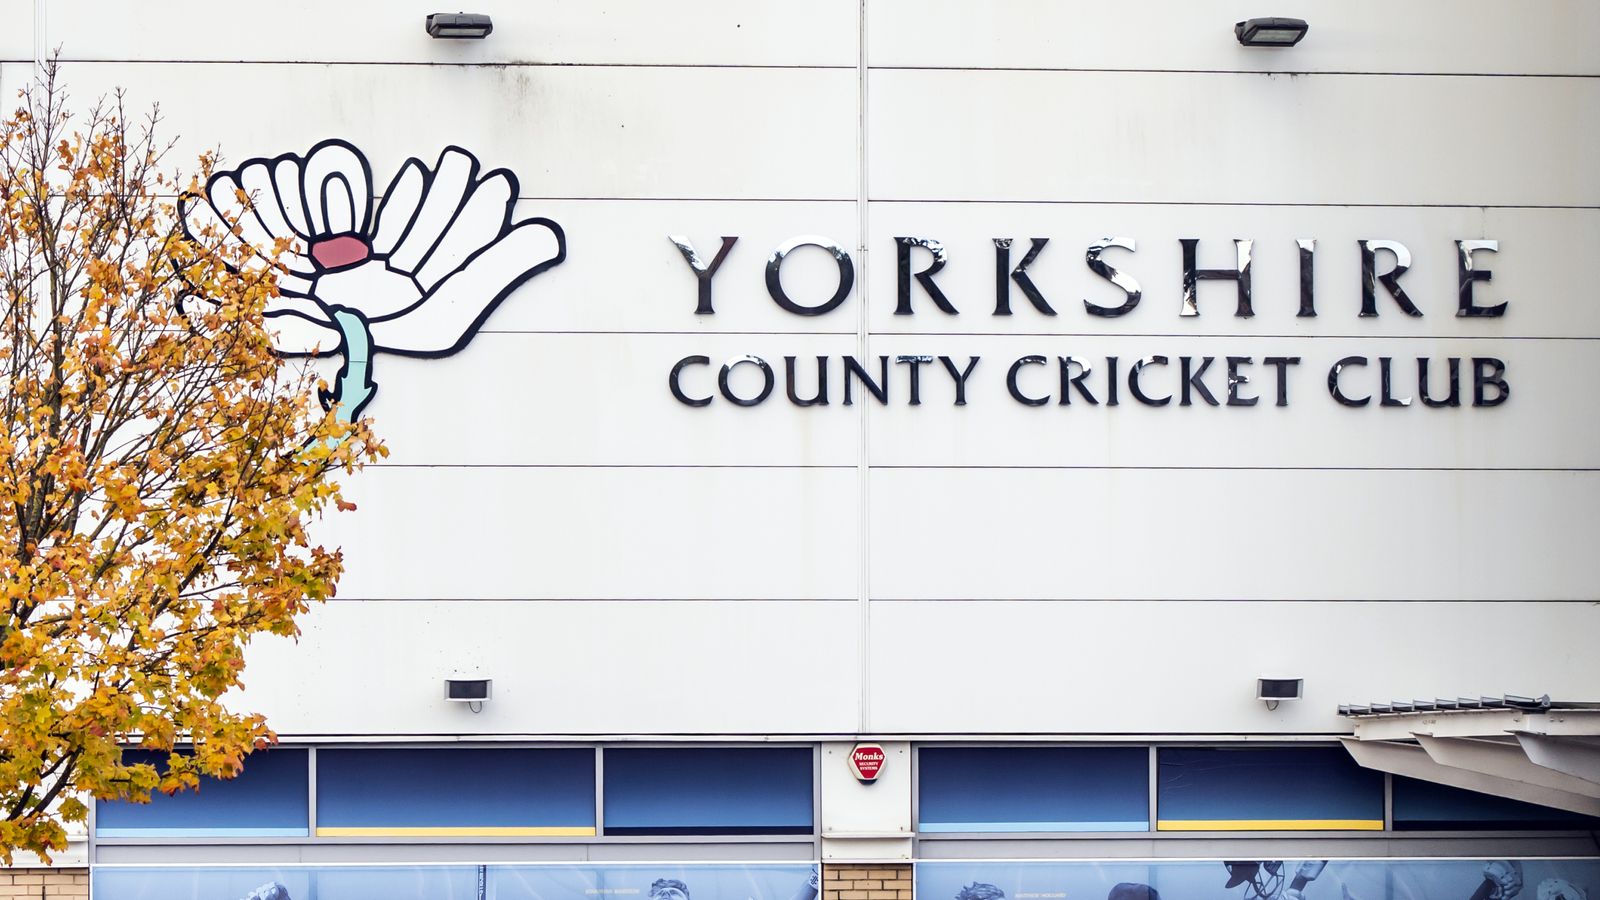 Ашли иска сделка за екипировка за крикет с Англия, тъй като се насочва към спасяването на Йоркшир